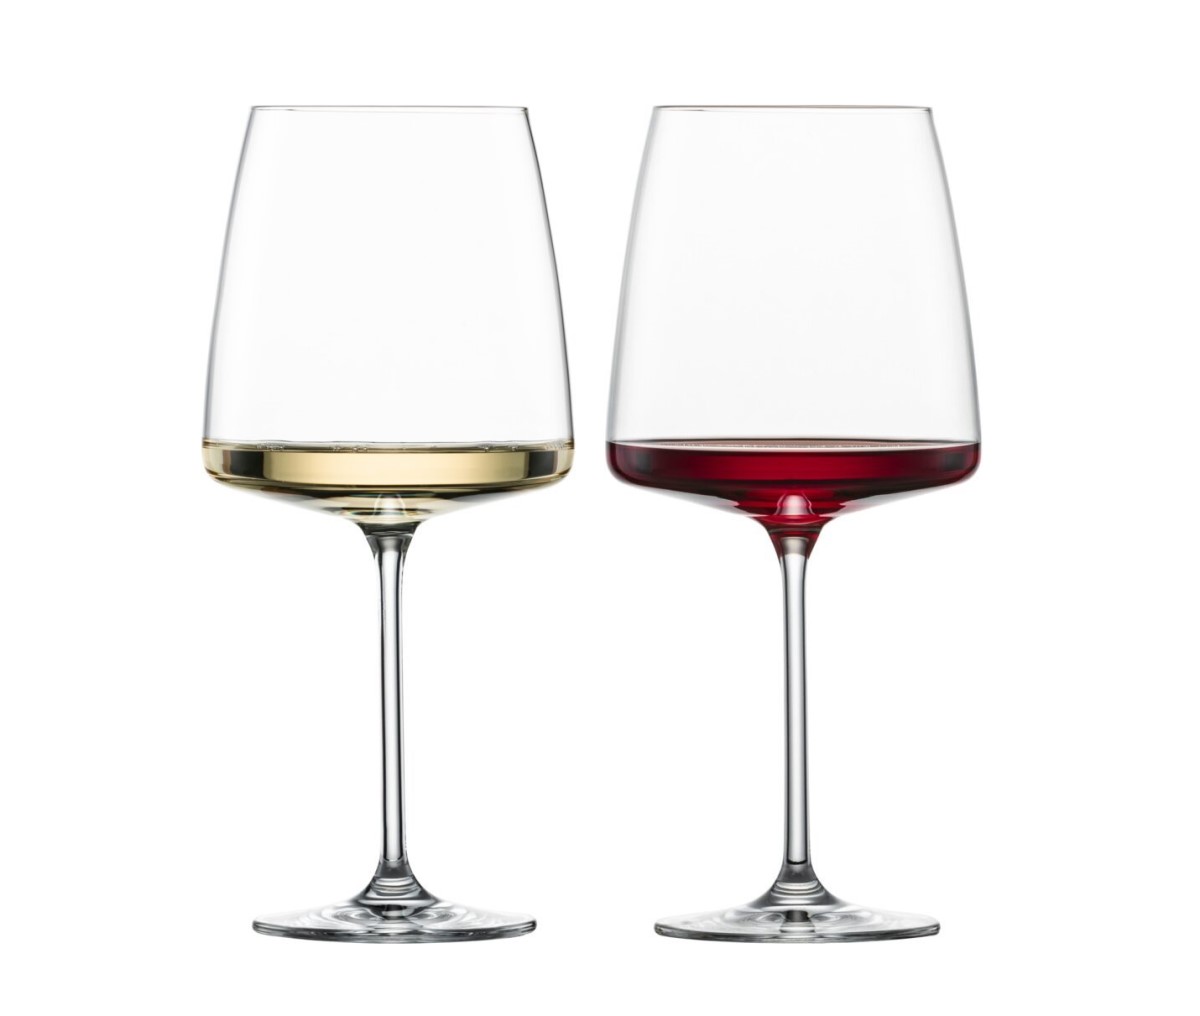 doua pahare de vin cu picior inalt, unul cu vin alb si unul cu vin rosu